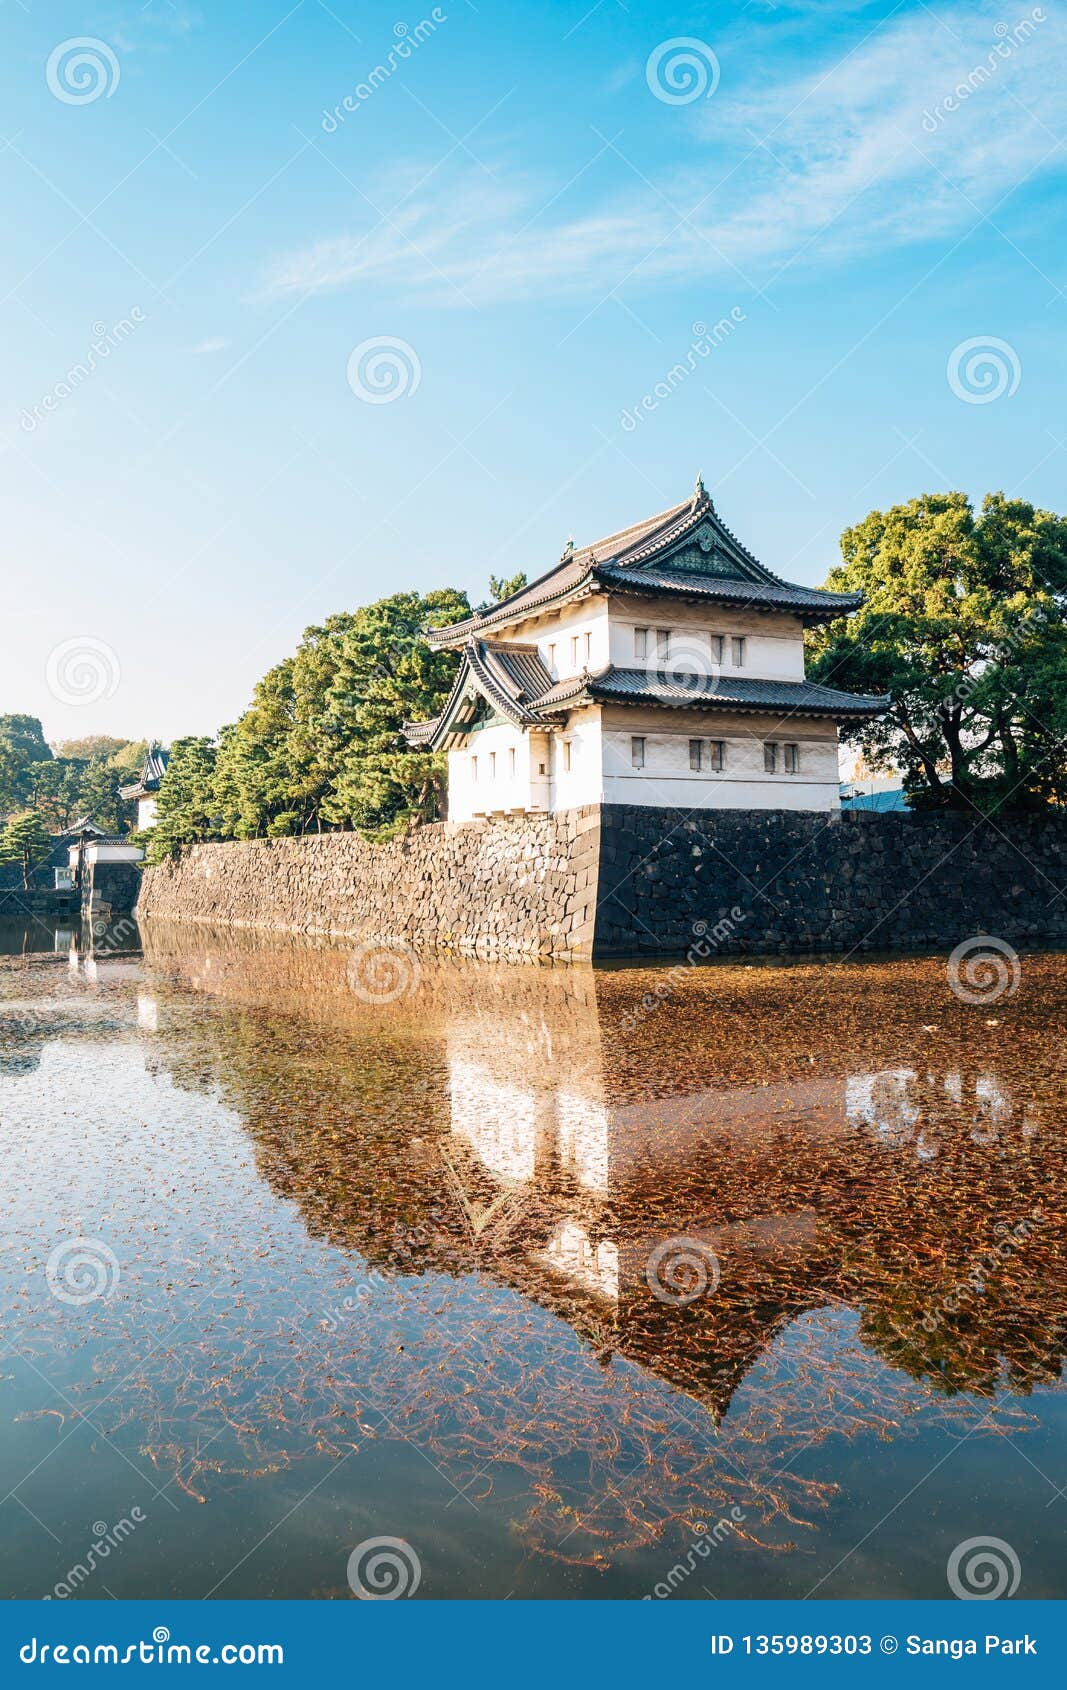 Arquitetura Historica Do Palacio Imperial No Toquio Japao Imagem De Stock Imagem De Pedra Famoso